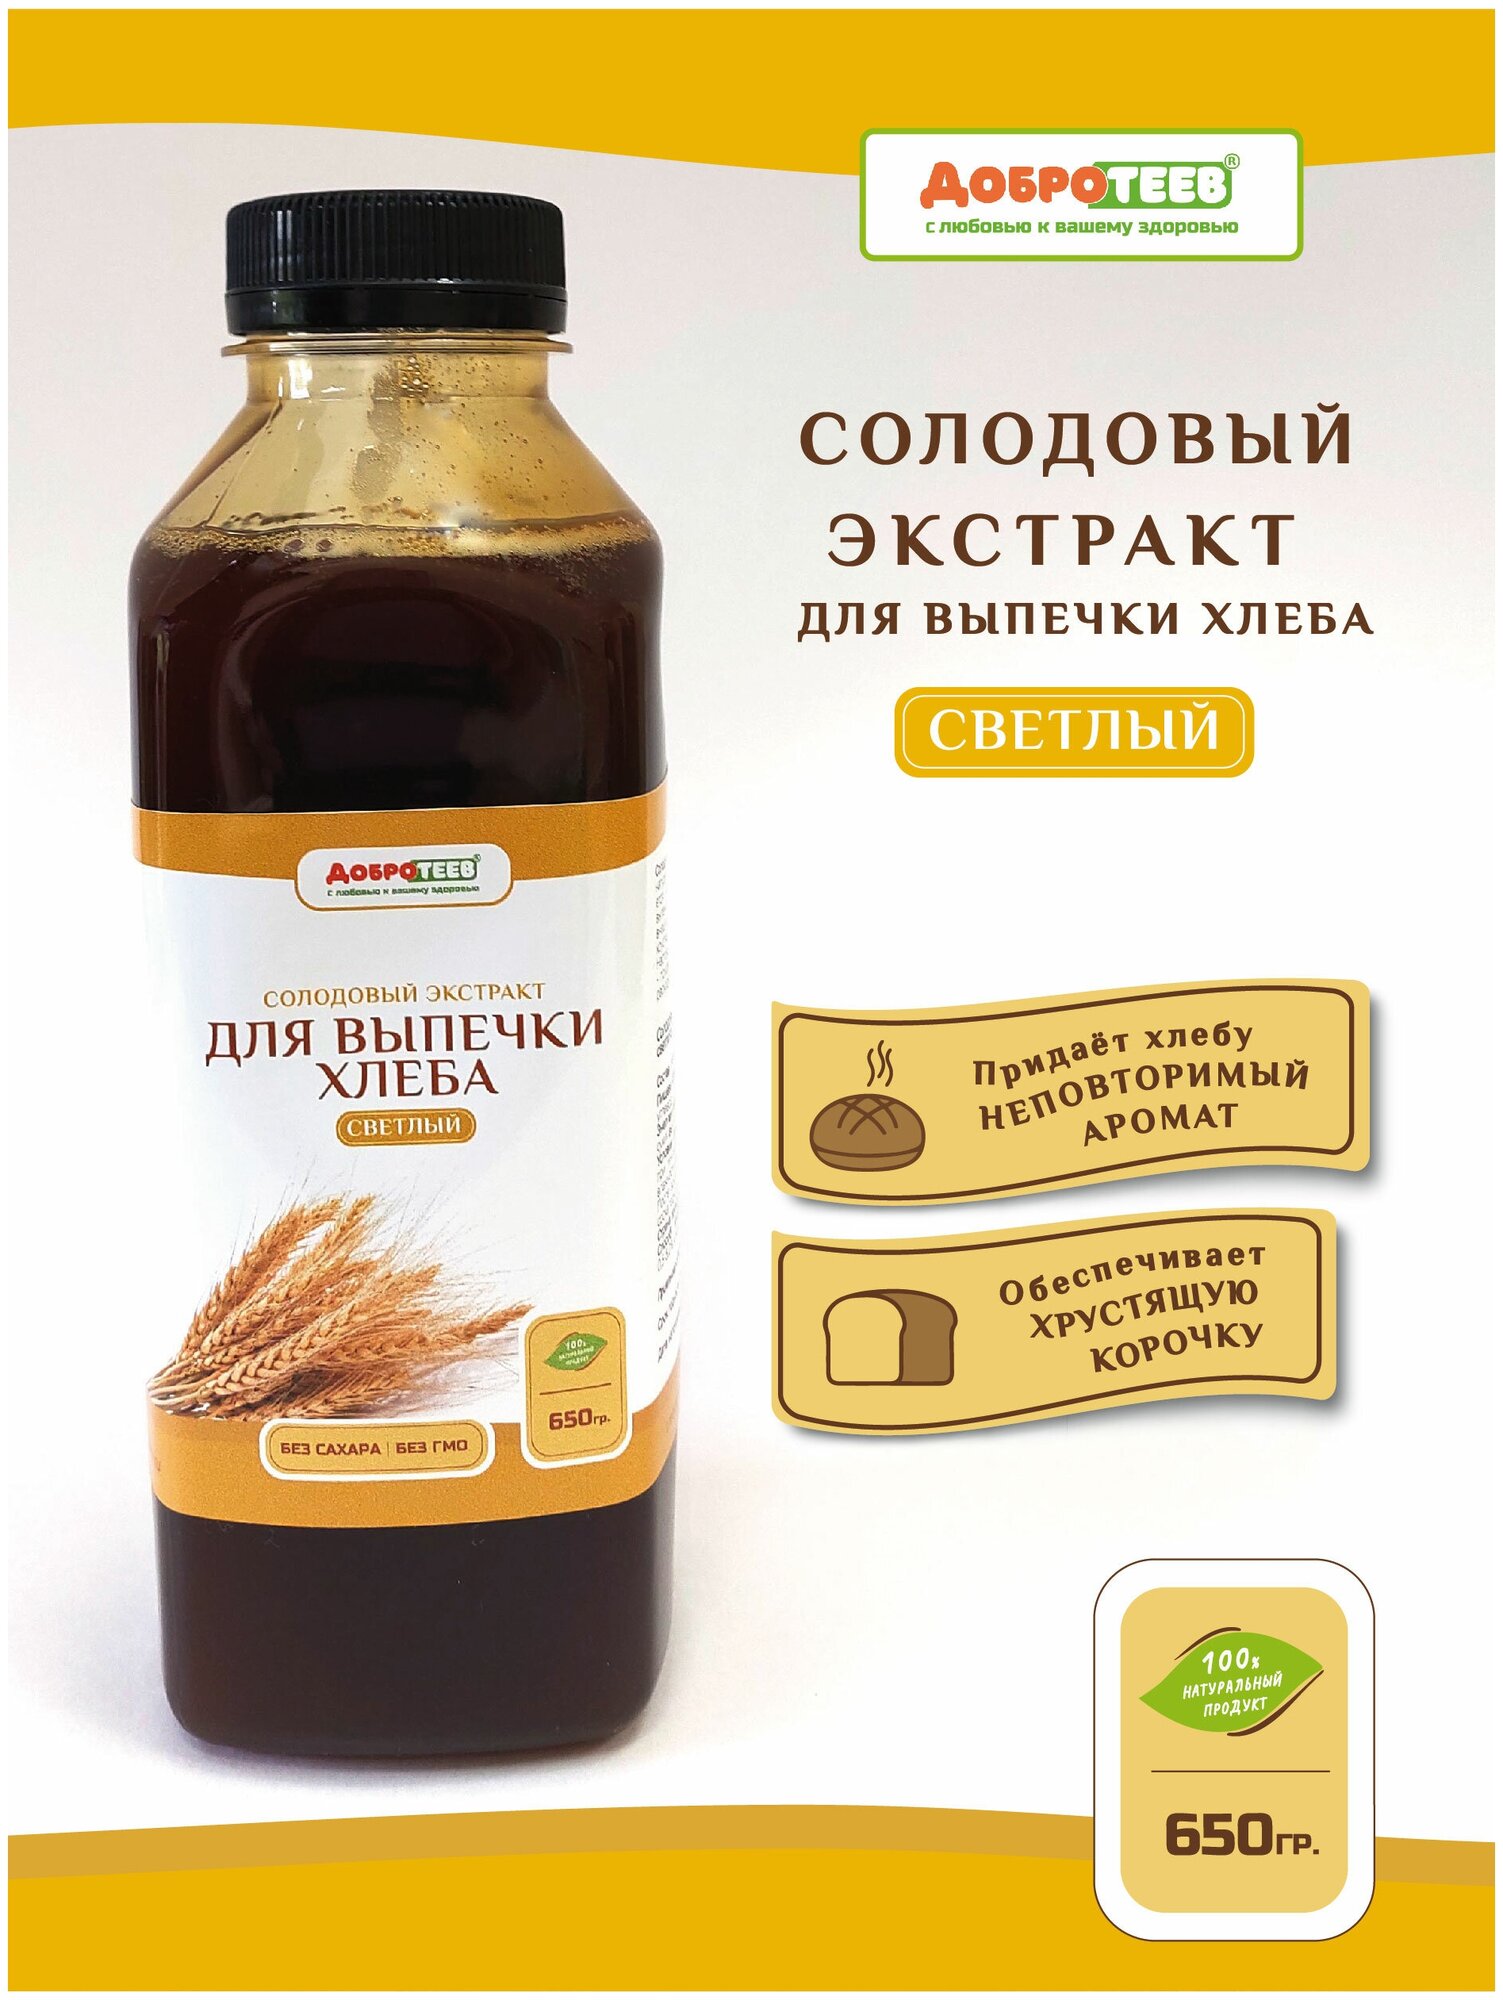 Солодовый экстракт для выпечки хлеба (светлый) 650г ТМ Добротеев